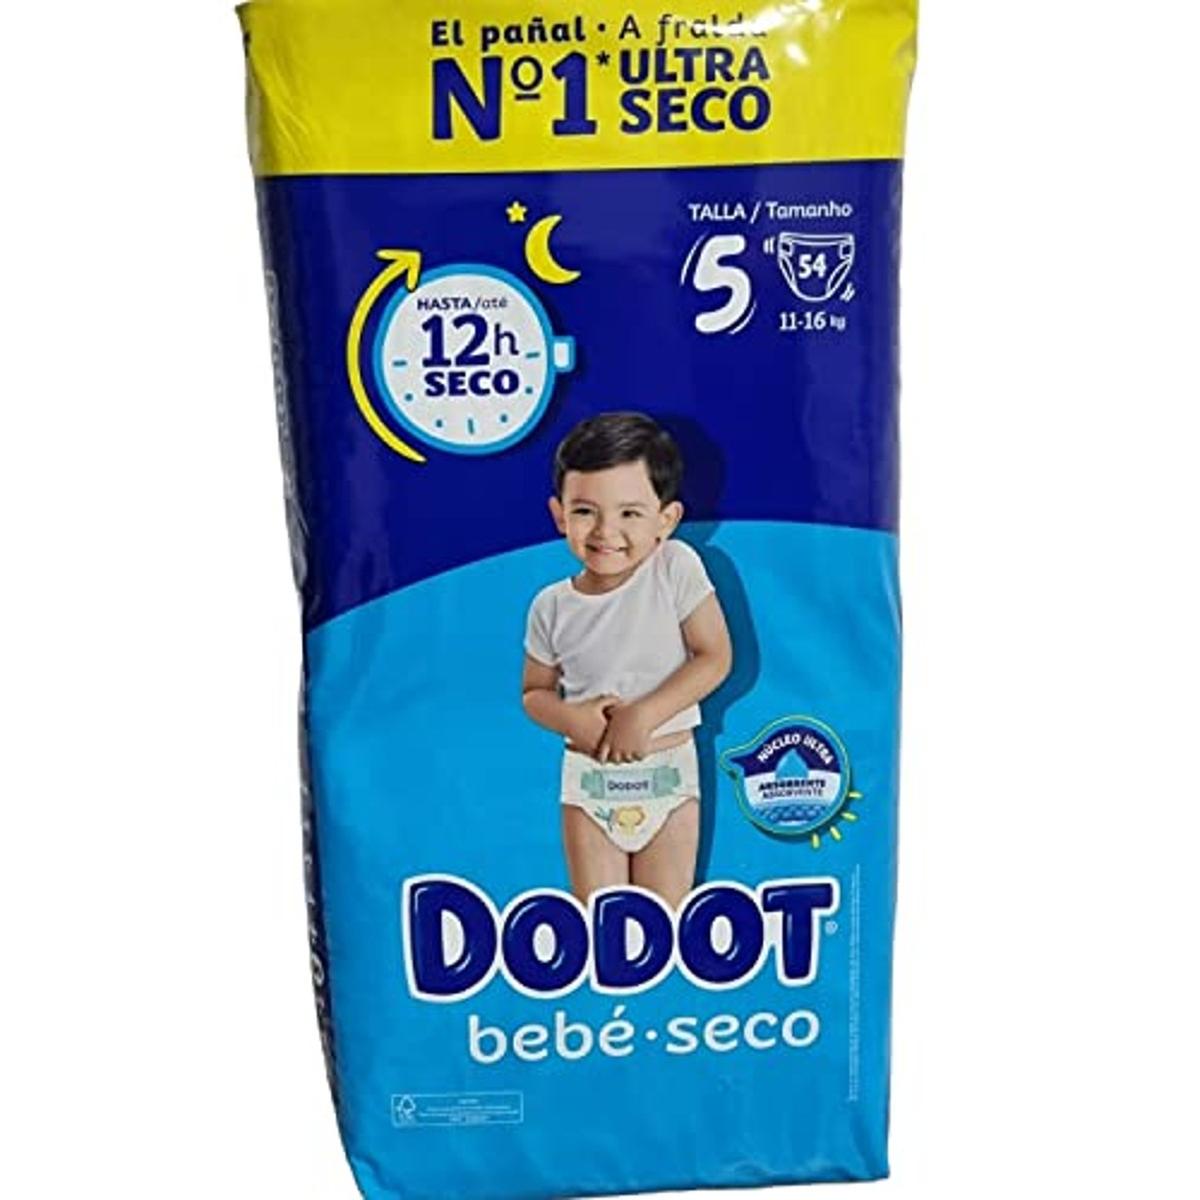 Dodot - Pañales bebé seco talla 5, 11-16 kg, paquete de 54 unidades, Recien Nacido